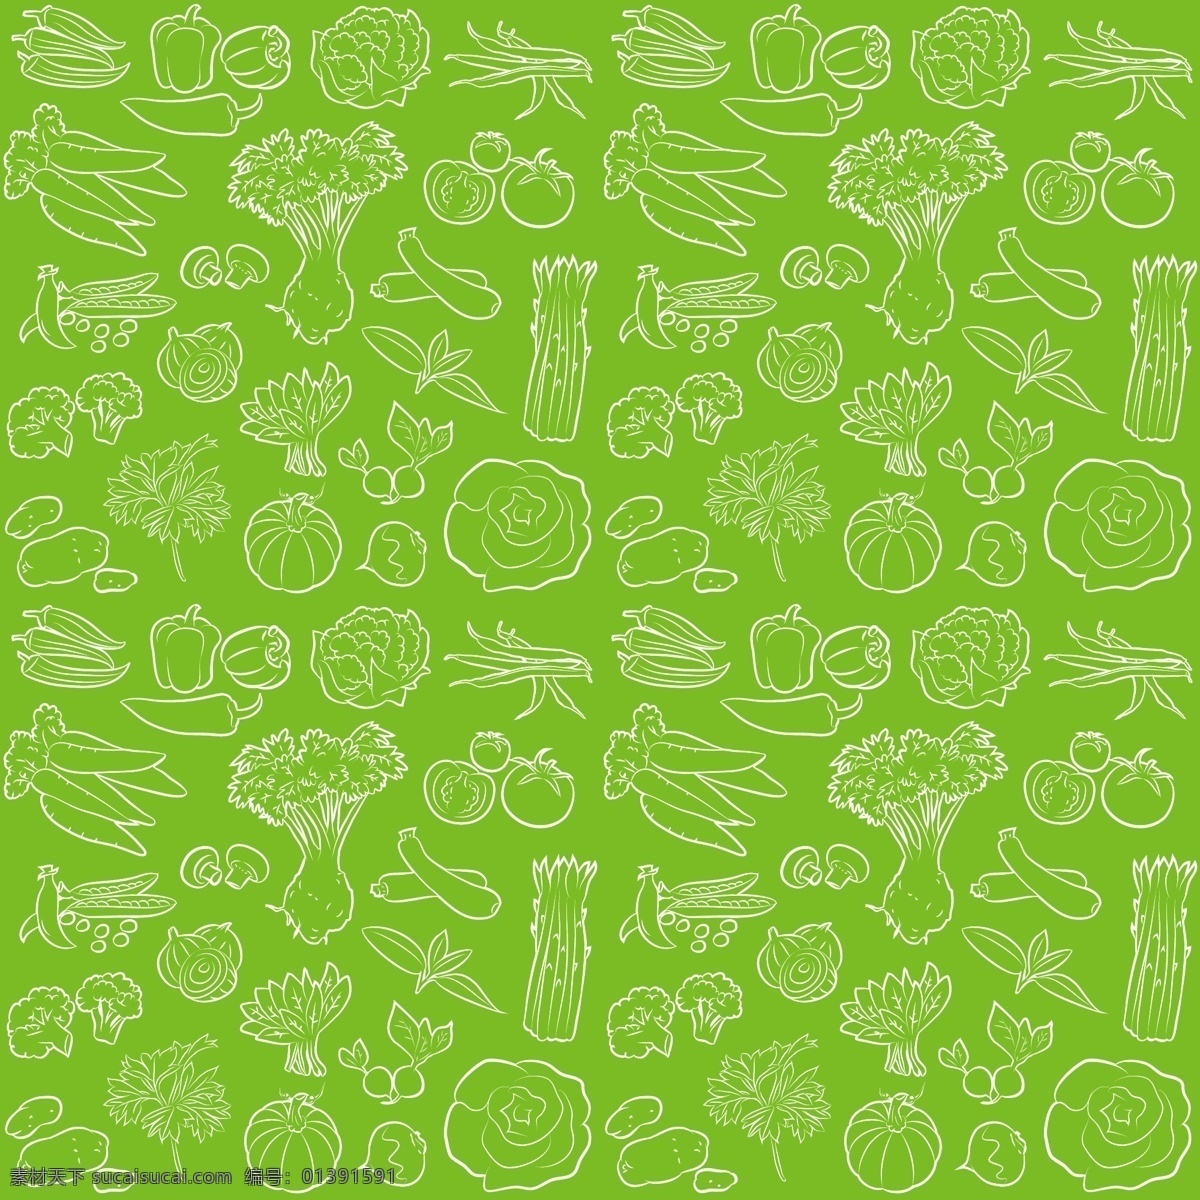 蔬菜背景底纹 蔬菜 底纹 蔬菜底纹 蔬菜简笔画 简笔画 底纹边框 背景底纹